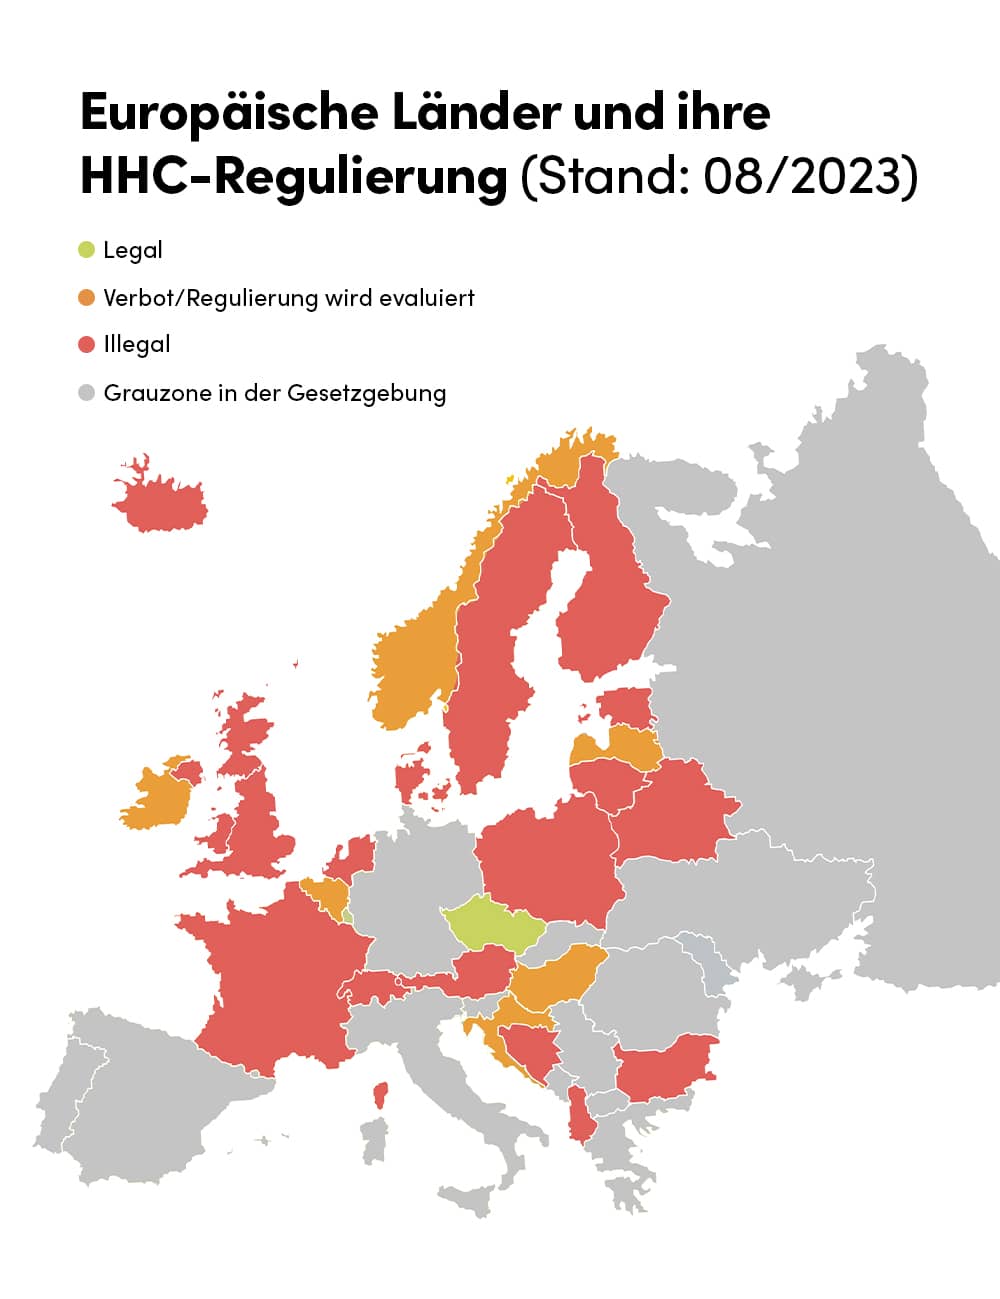 Übersicht europäischer Länder mit HHC-Verbot